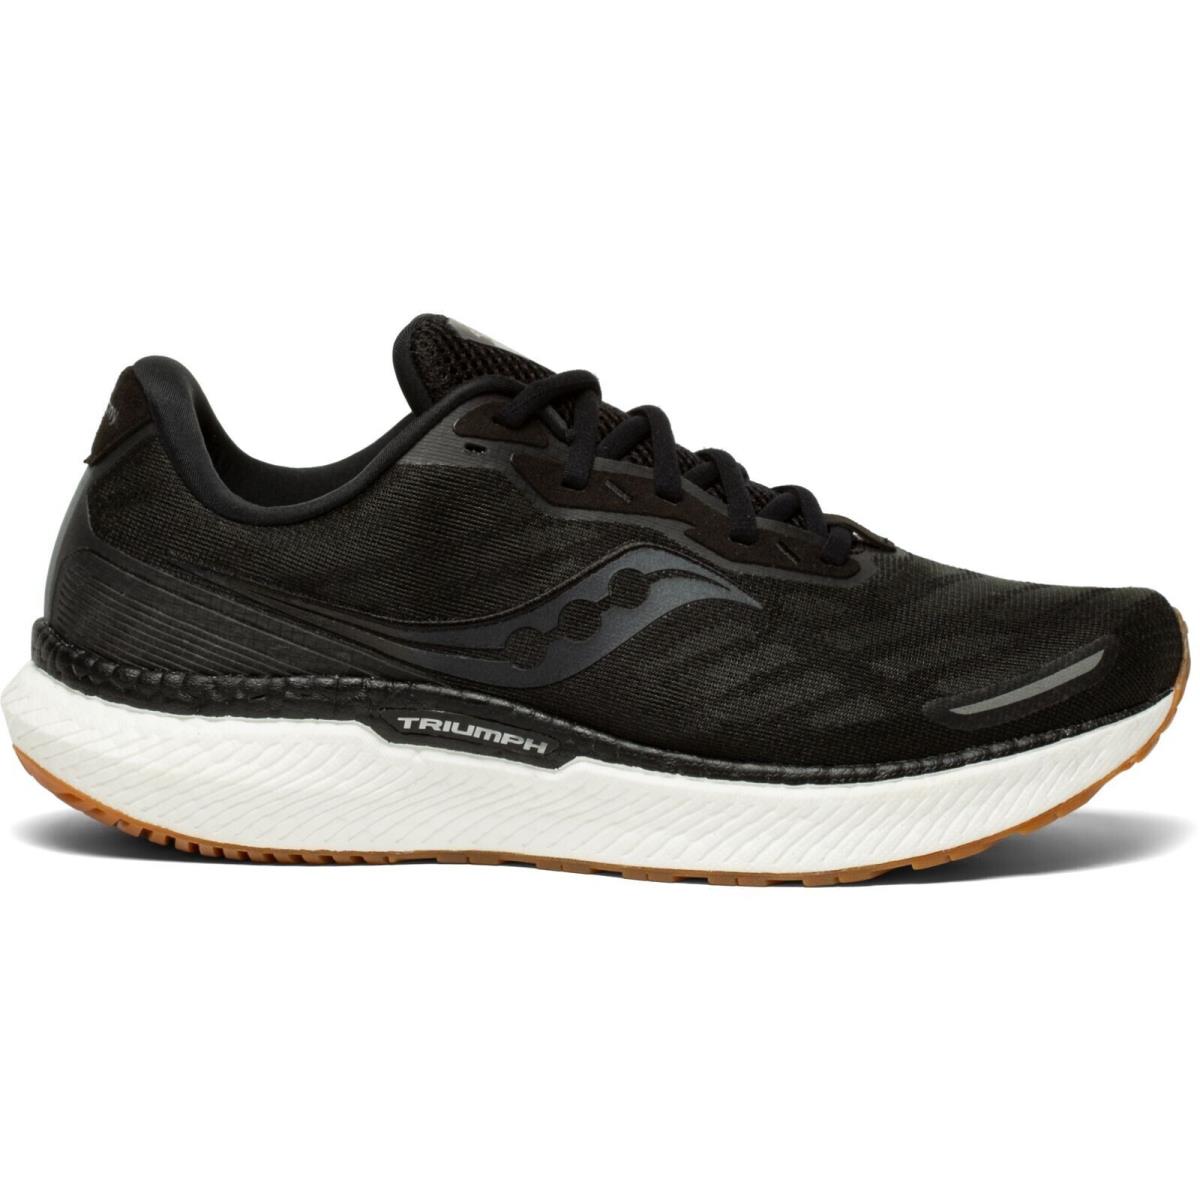 Saucony shoes Triumph - Black 0